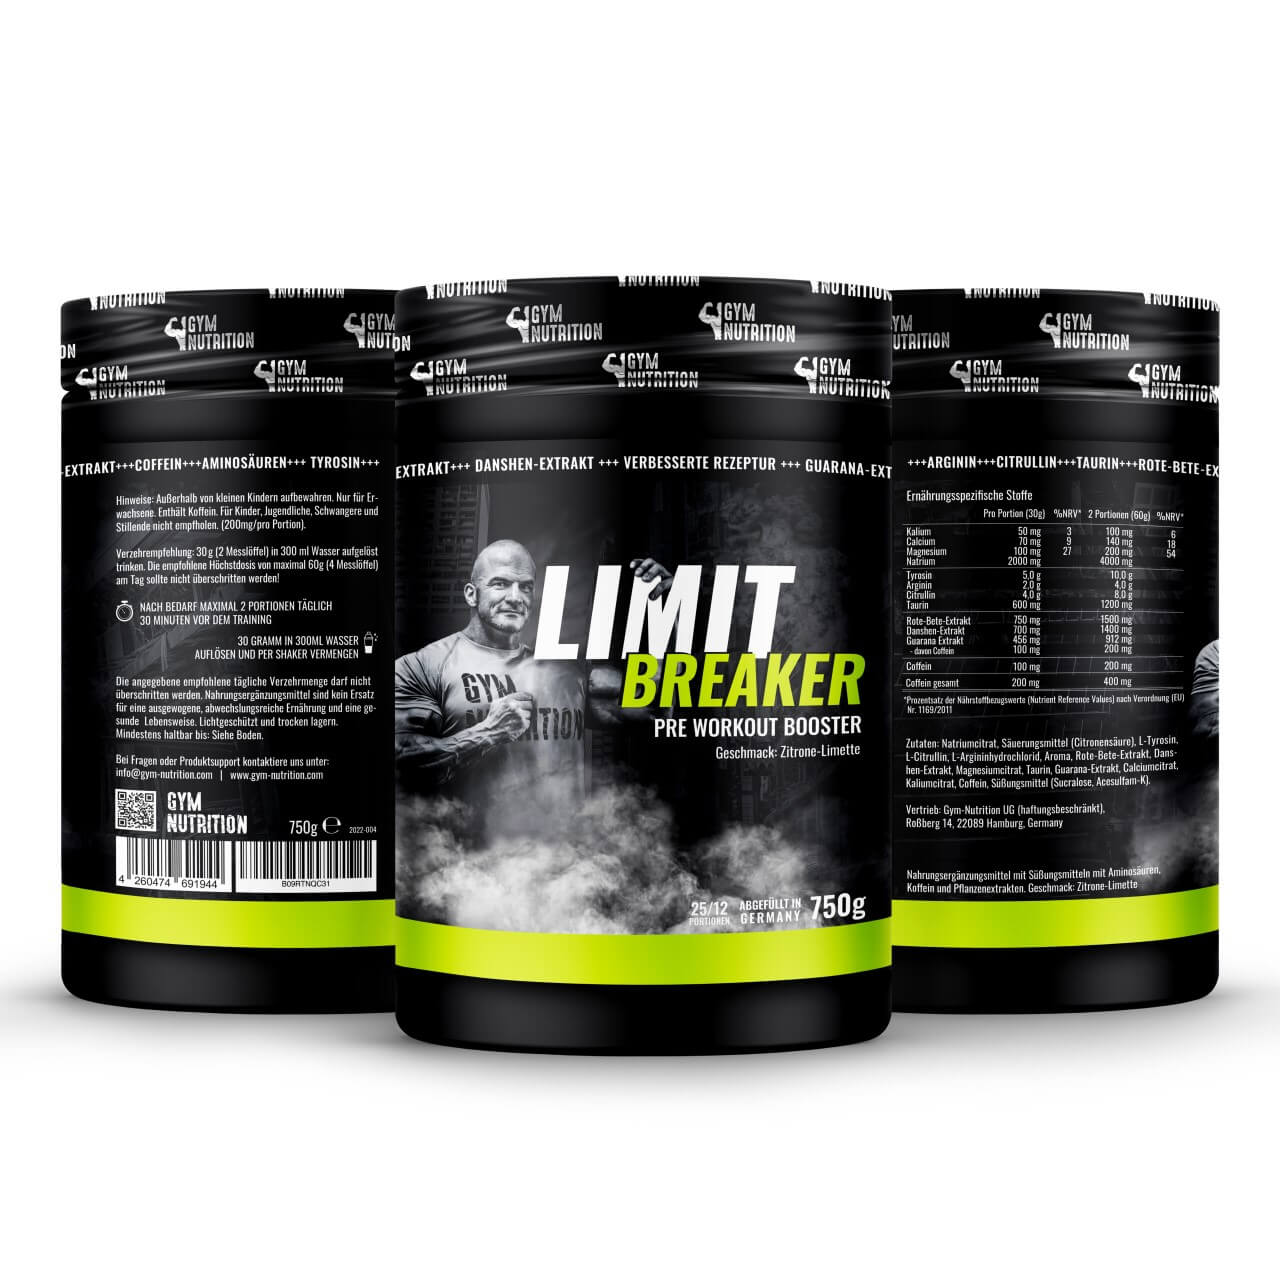 Ultra Hardcore Booster Pre workout Fitness - Limit breaker 2.0 - 750g Zitrone-Limette Geschmack